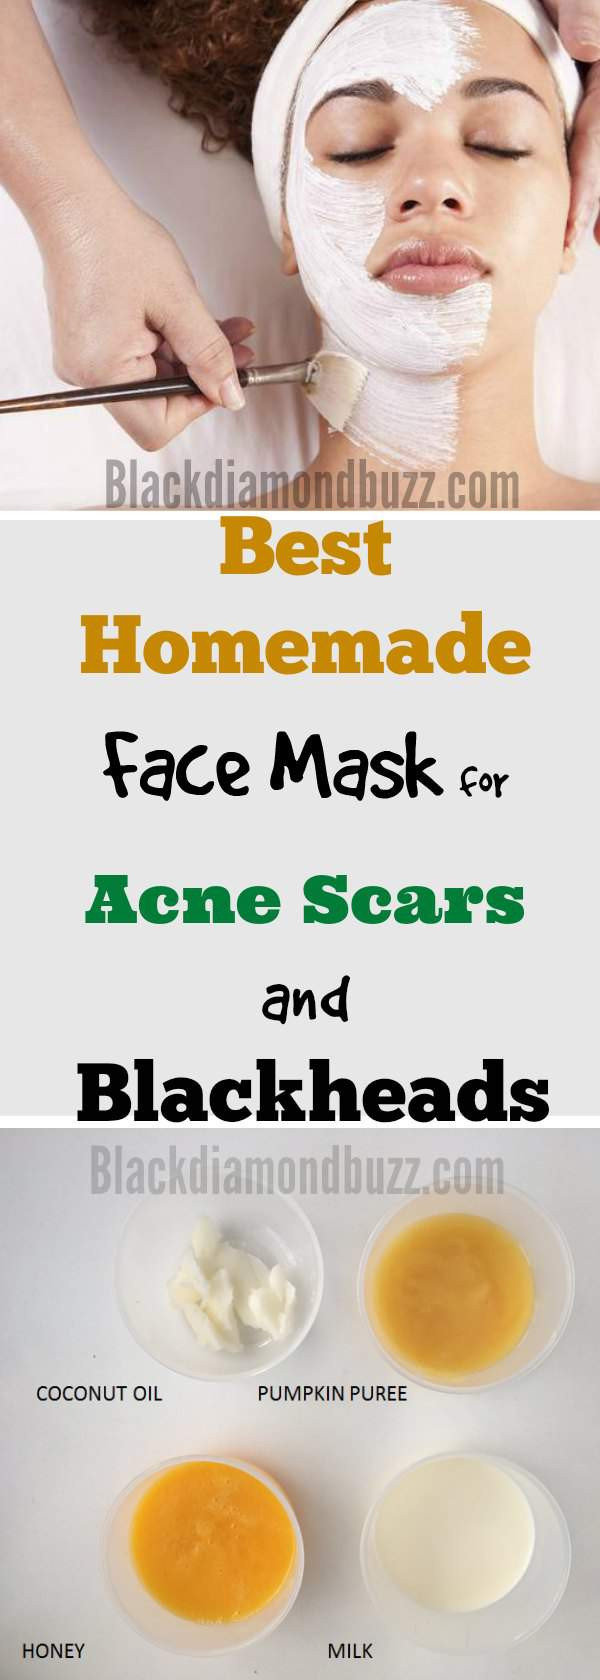 Acne DIY Mask
 DIY Face Mask for Acne 7 Best Homemade Face Masks